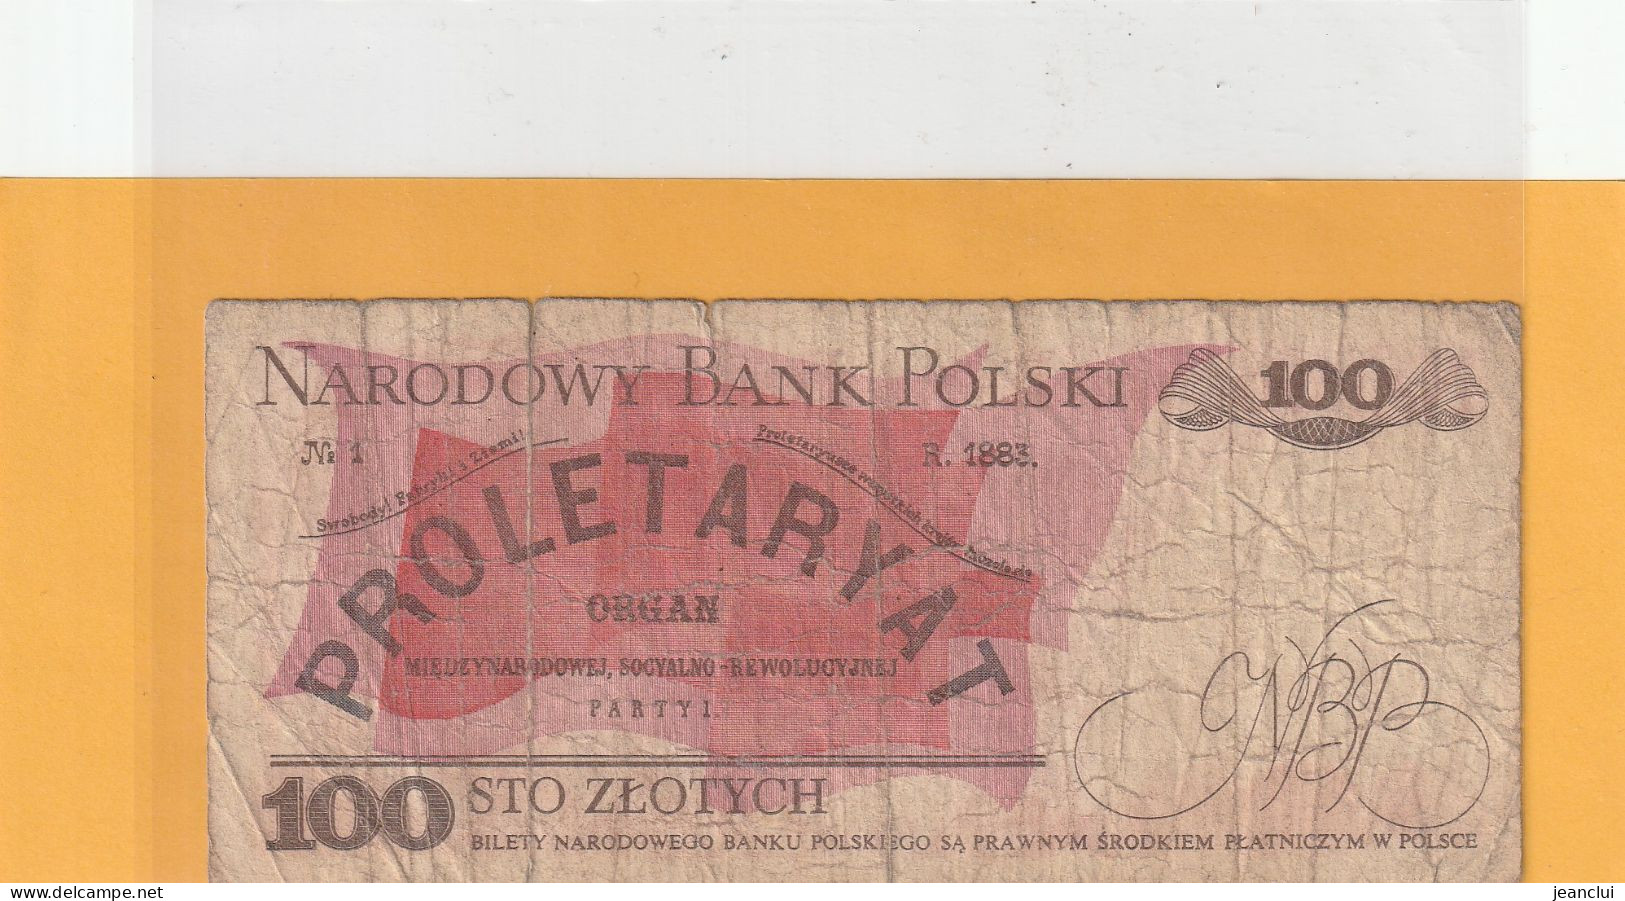 NARODOWY BANK POLSKI . 100 ZLOTYCH .  1-6-1986 .  N° PA 4875469 .  2 SCANNES - Pologne